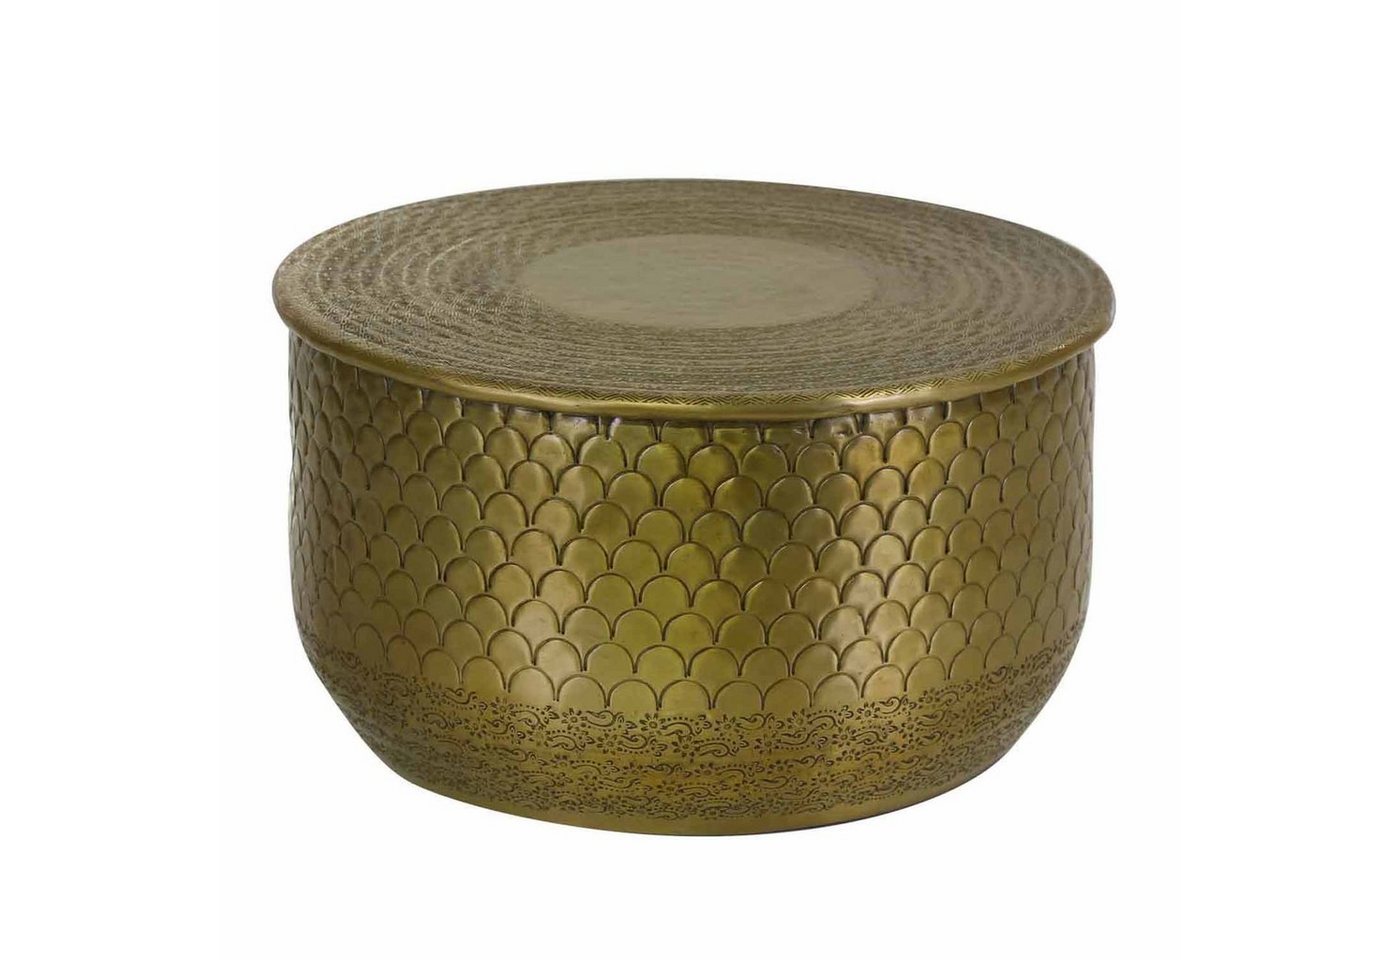 Casa Moro Couchtisch Orientalischer Beistelltisch Alava Gold rund (Einzeln in den Größen M, L, XL oder im Set, Couchtisch mit Hammerschlag verziert), Kunsthandwerk - mit Hammerschlag verziert von Casa Moro